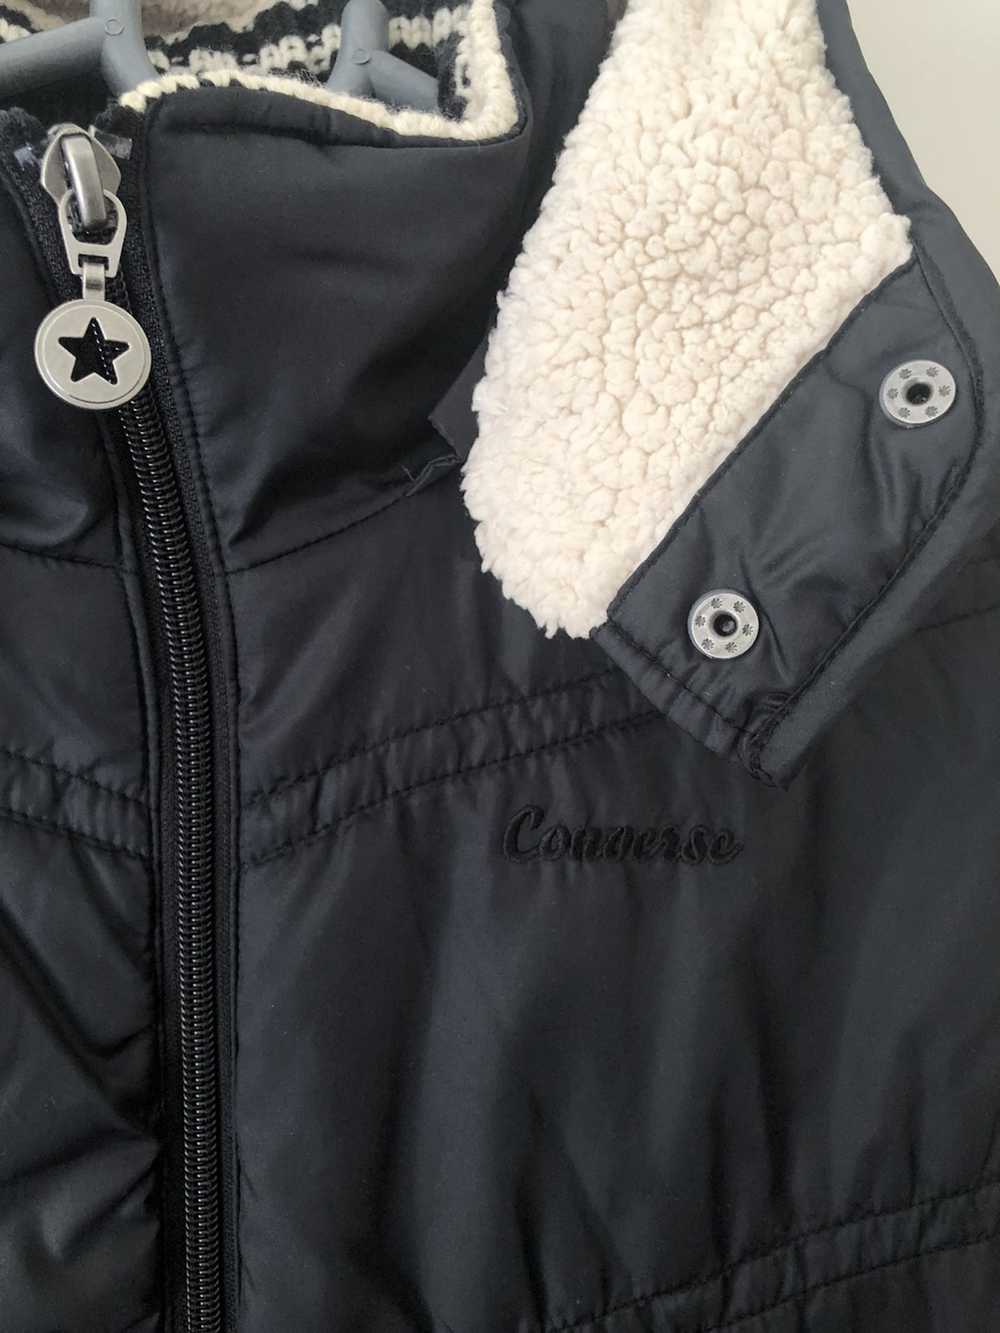 Converse Knit puffy light jacket womens large size - image 4